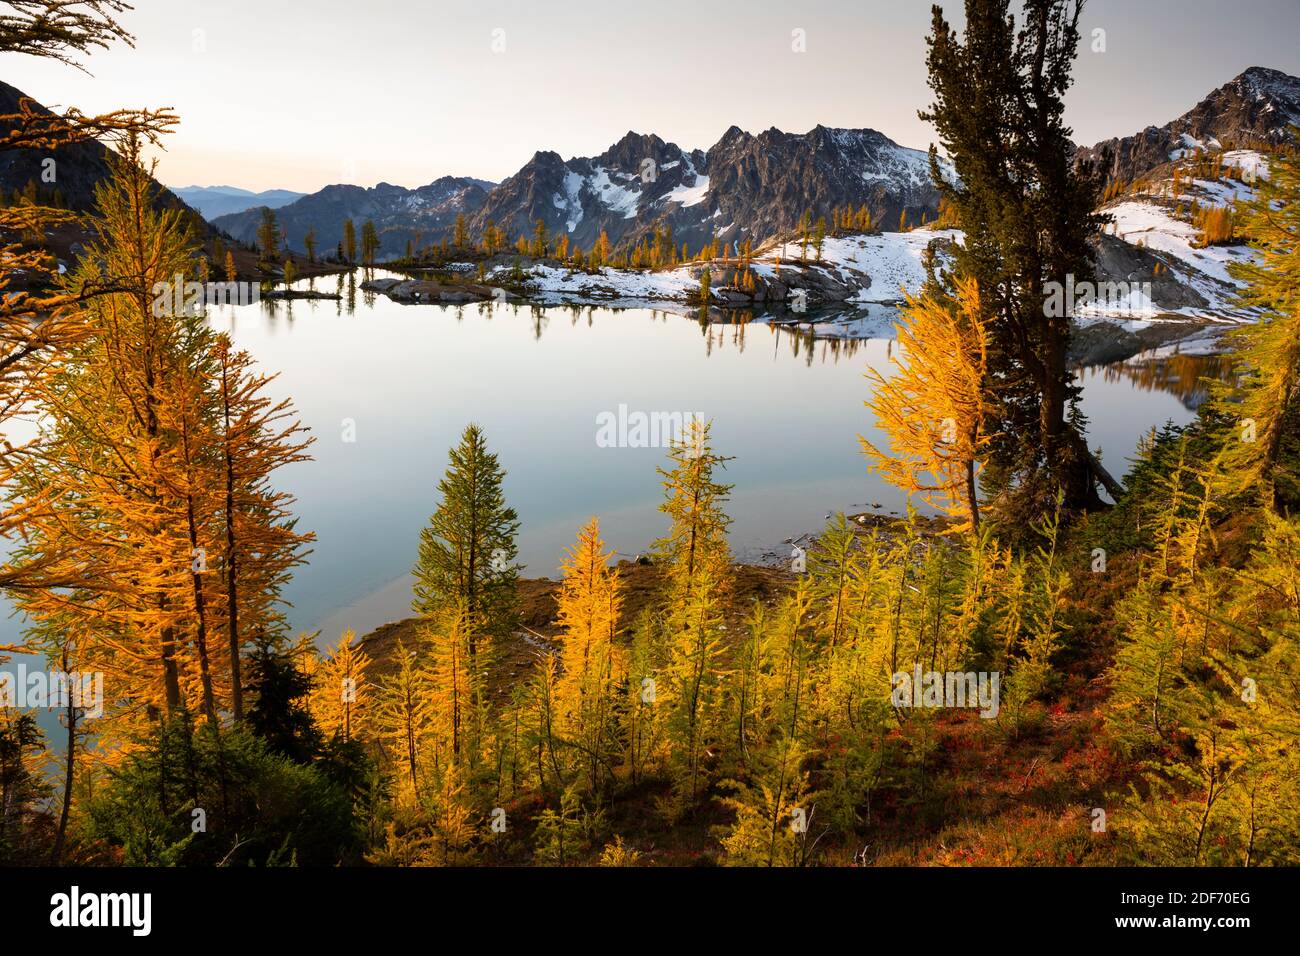 WA18653-00...WASHINGTON - mélèze subalpin aux couleurs vives de l'automne au-dessus du lac Lower Ice dans la région sauvage des lacs alpins. Banque D'Images